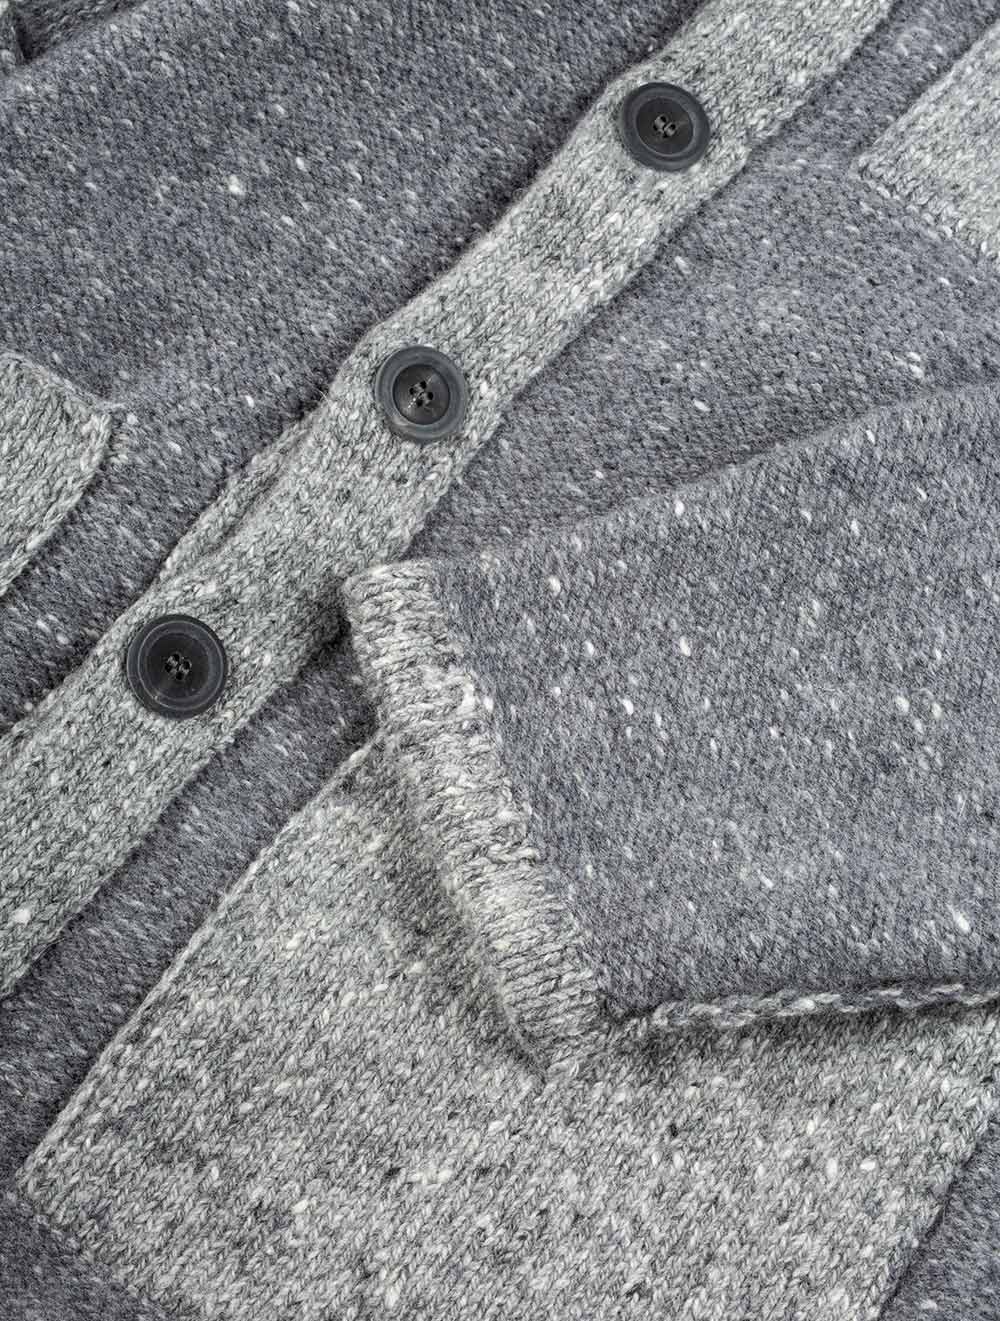 Inis Meain | Beige Melange Wool Cashmere Carpenter Jacket